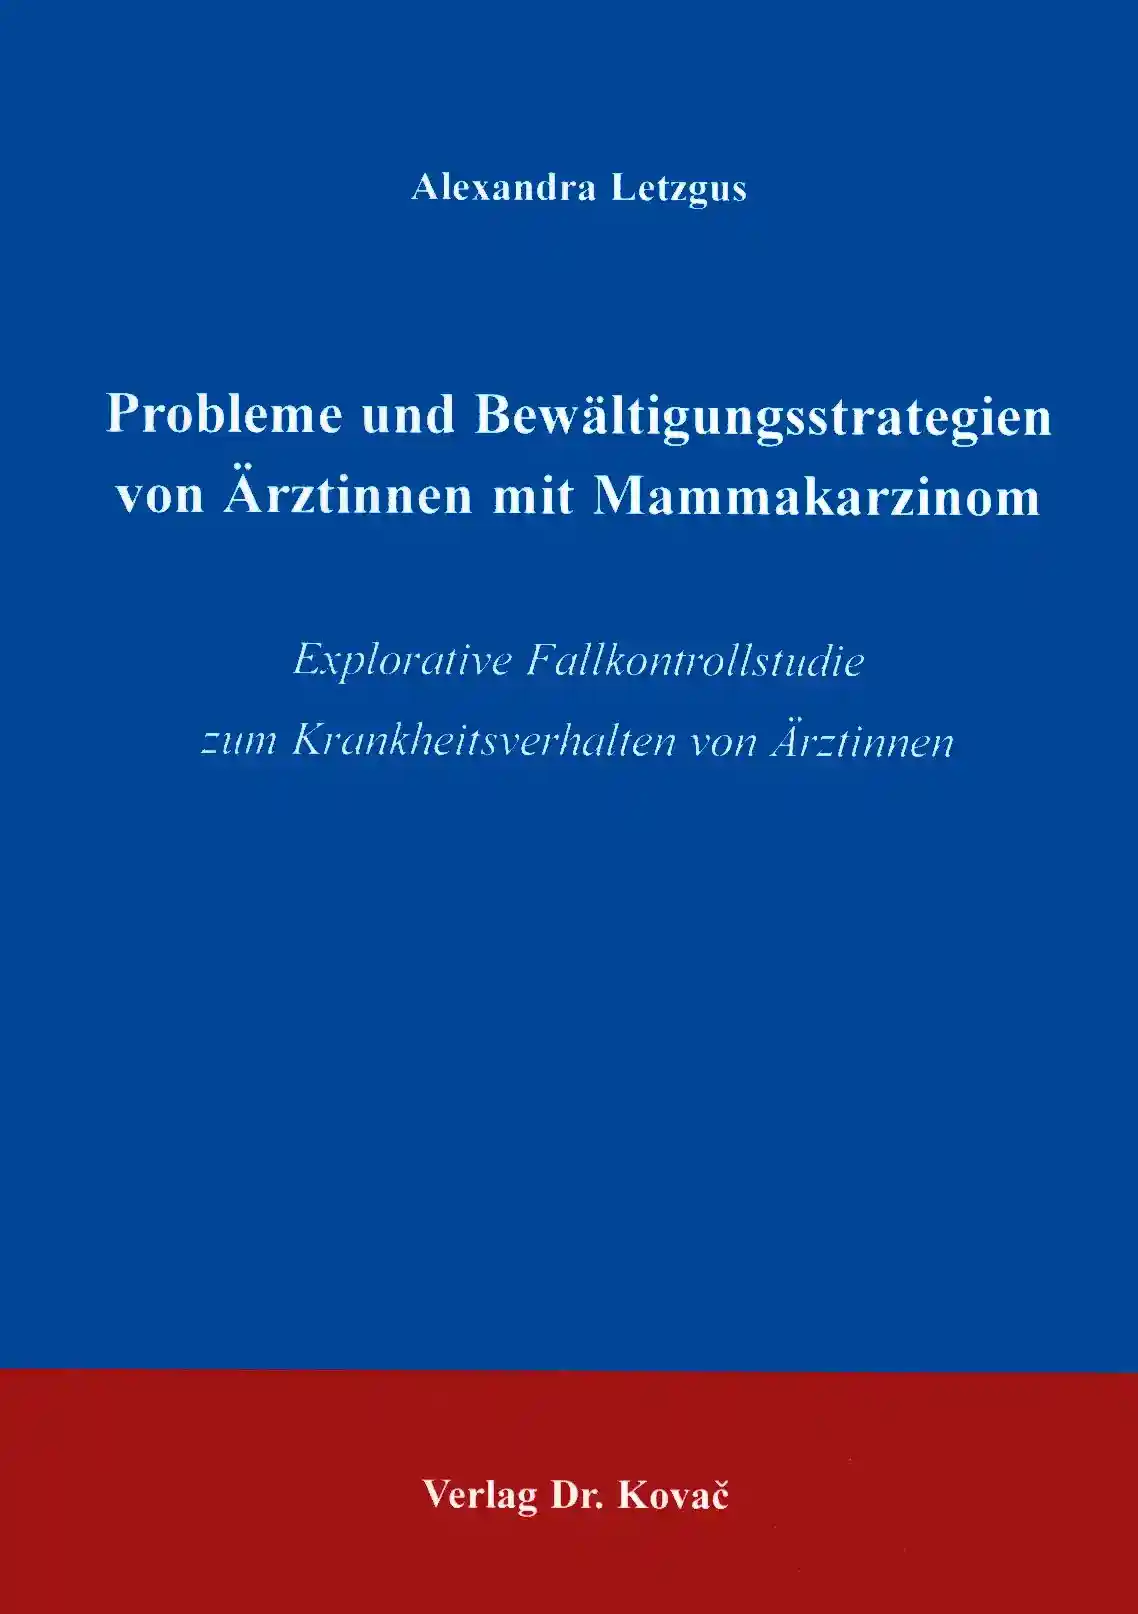 Probleme und Bewältigungsstrategien von Ärztinnen mit Mammakarzinom (Dissertation)